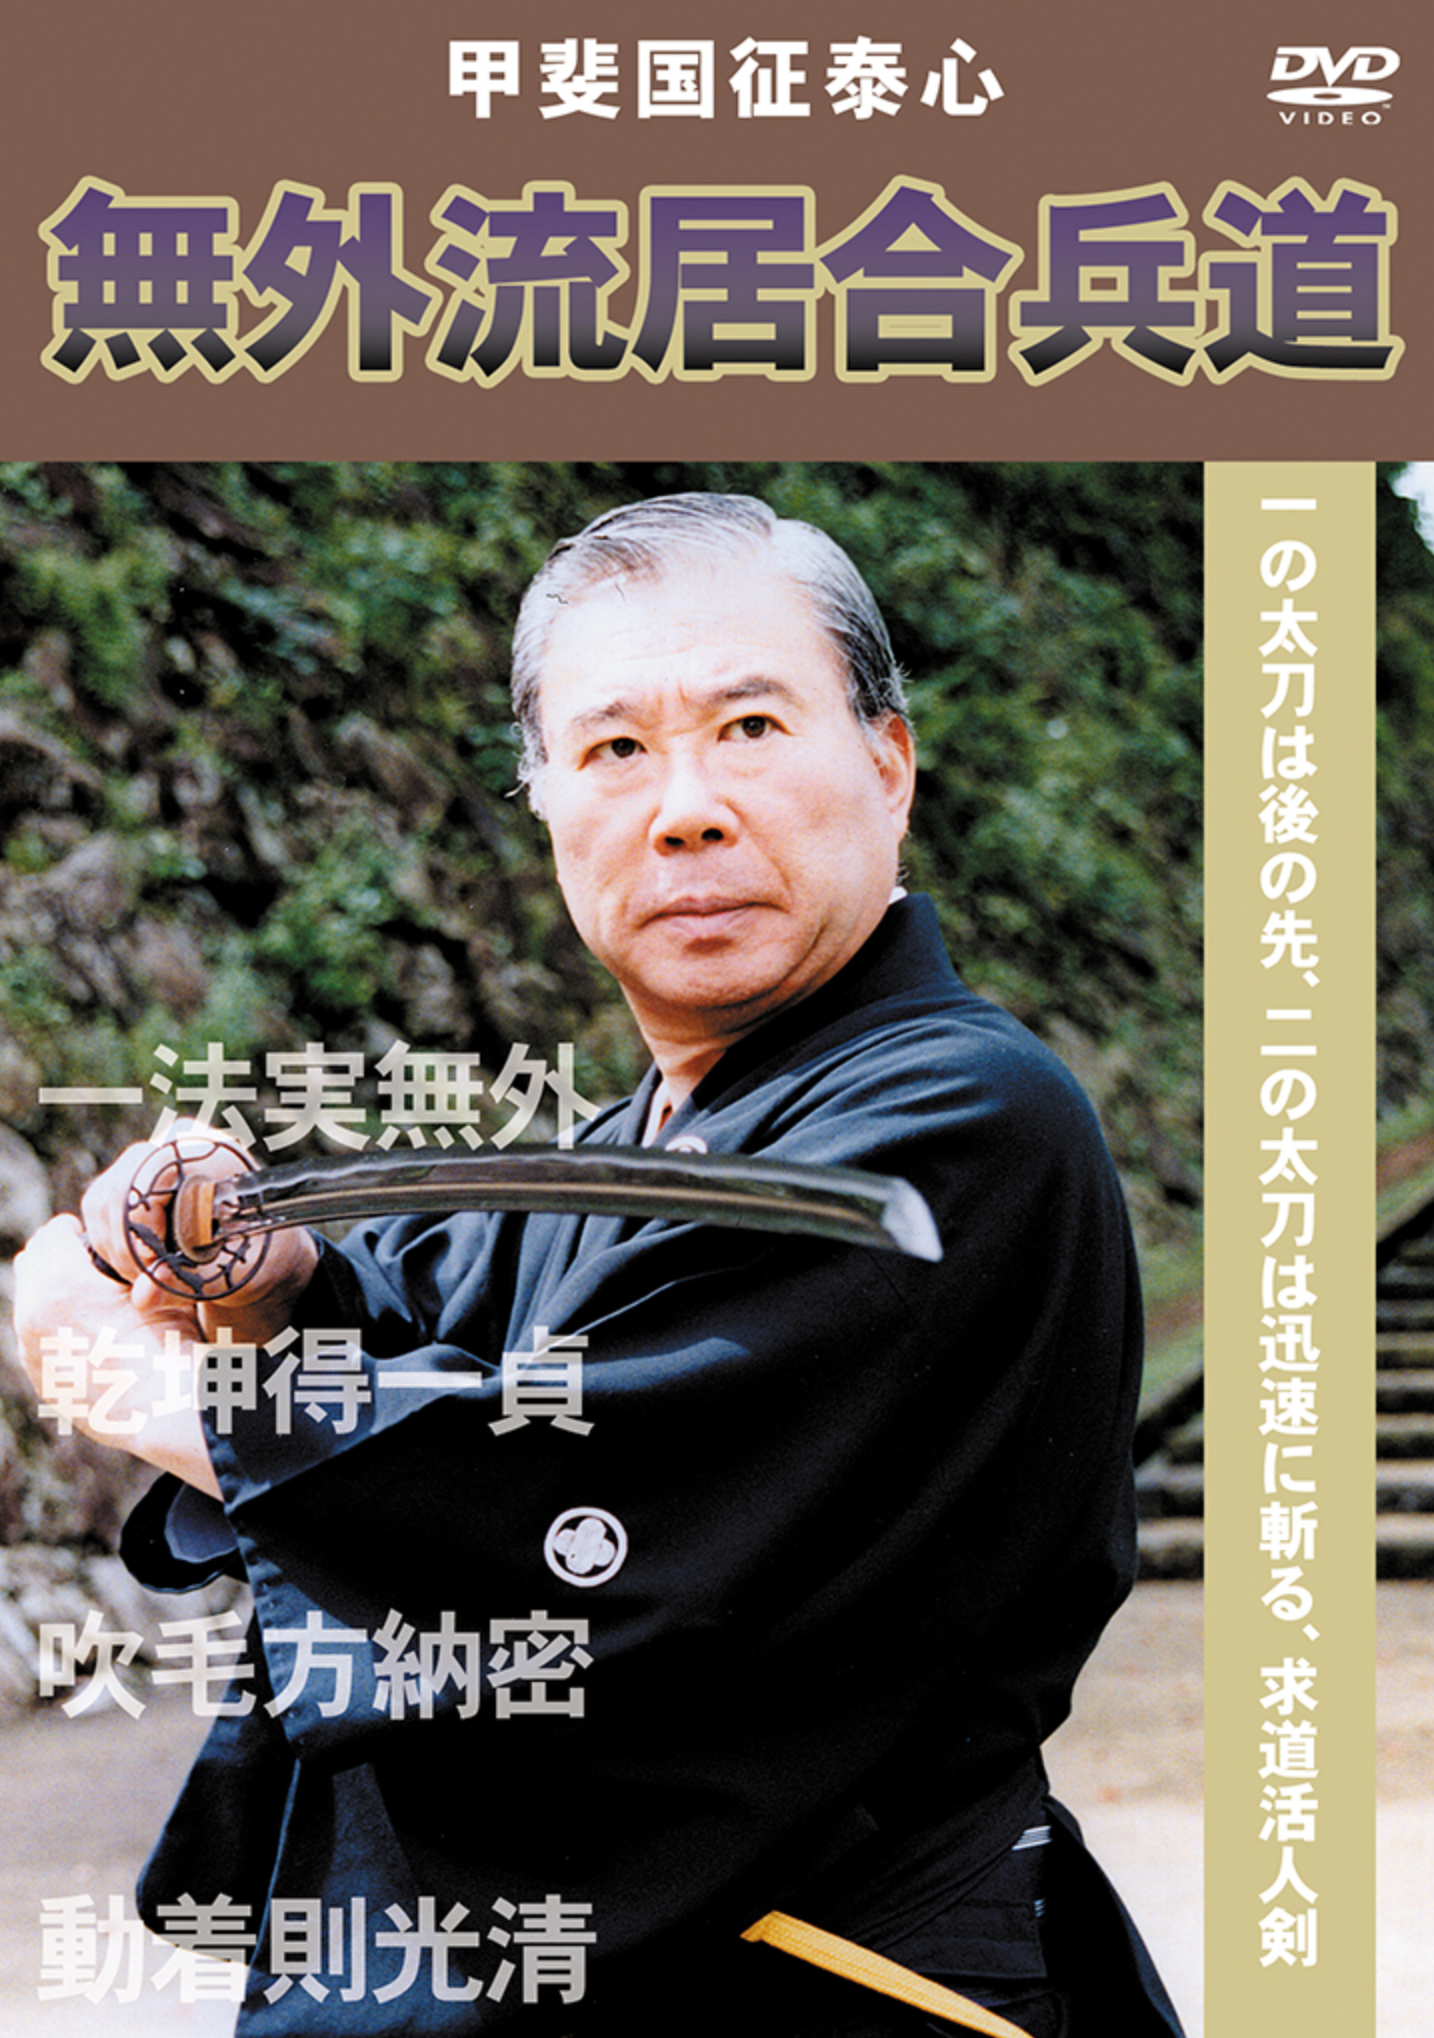 Mugai Ryu Iaiheido DVD with Kuniyuki Kai - Budovideos Inc